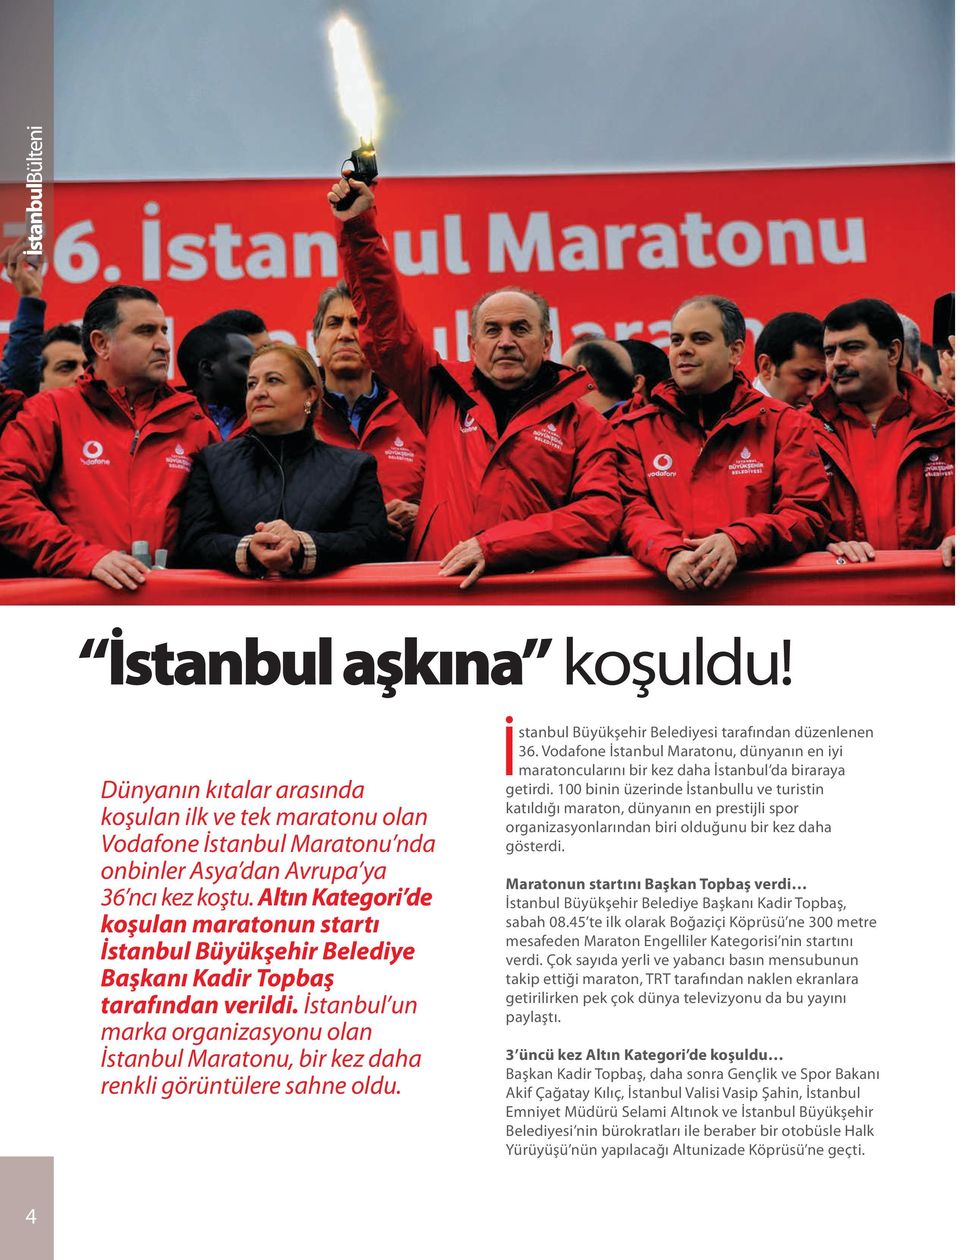 İstanbul un marka organizasyonu olan İstanbul Maratonu, bir kez daha renkli görüntülere sahne oldu. İstanbul Büyükşehir Belediyesi tarafından düzenlenen 36.